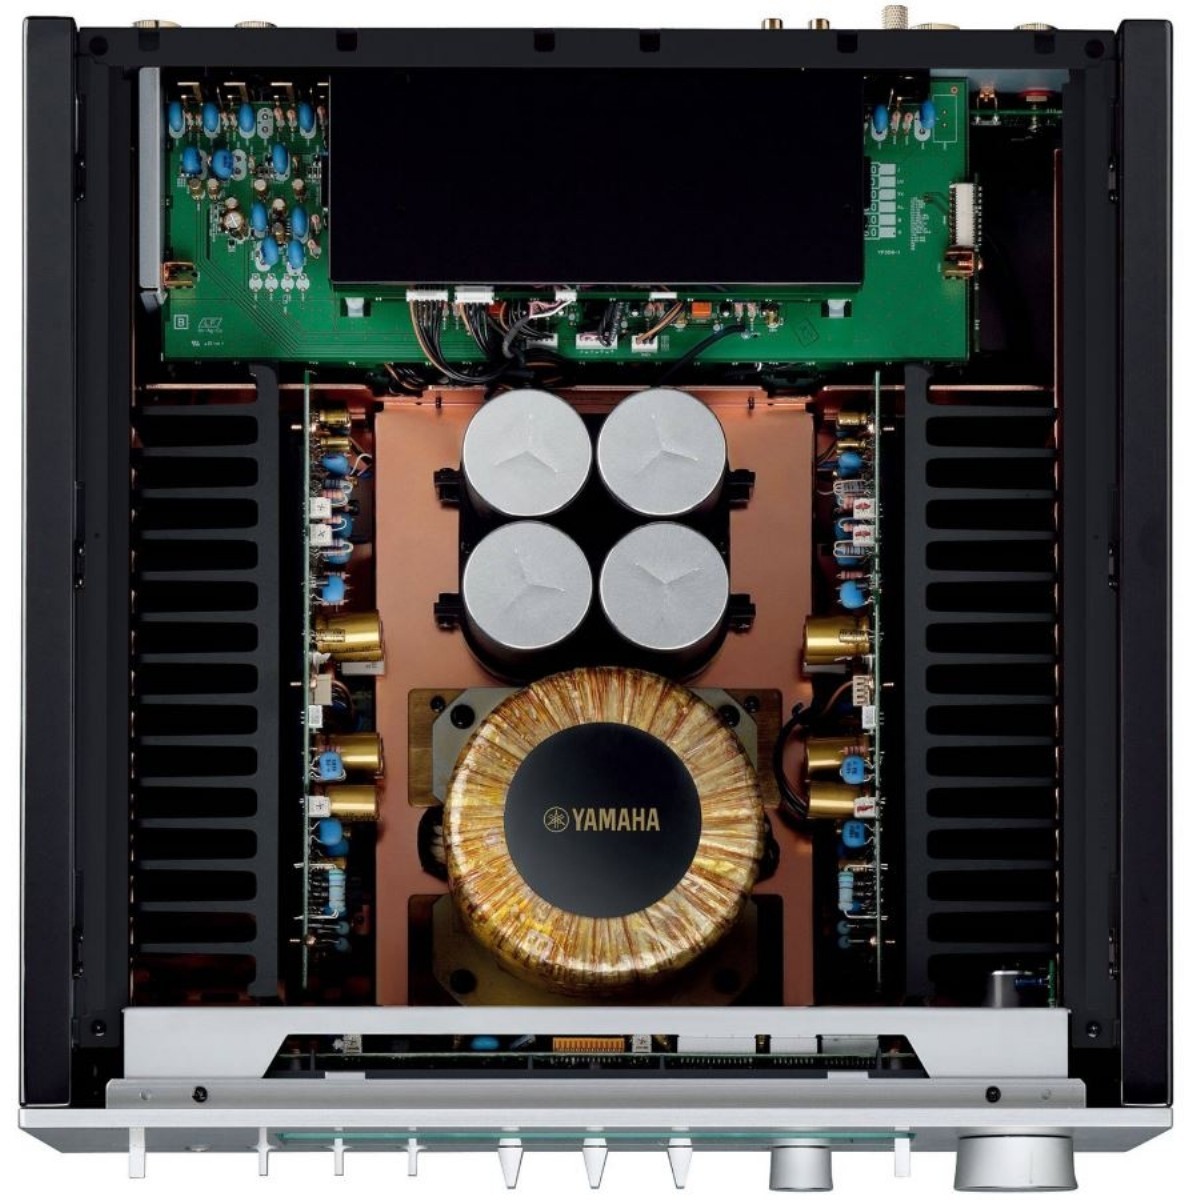 Entegre Ampliler | Yamaha AS 3200 Entegre Amfi |  AS 3200 | yamaha as3200 entegre amplifier,as3200,akusta hifi | 